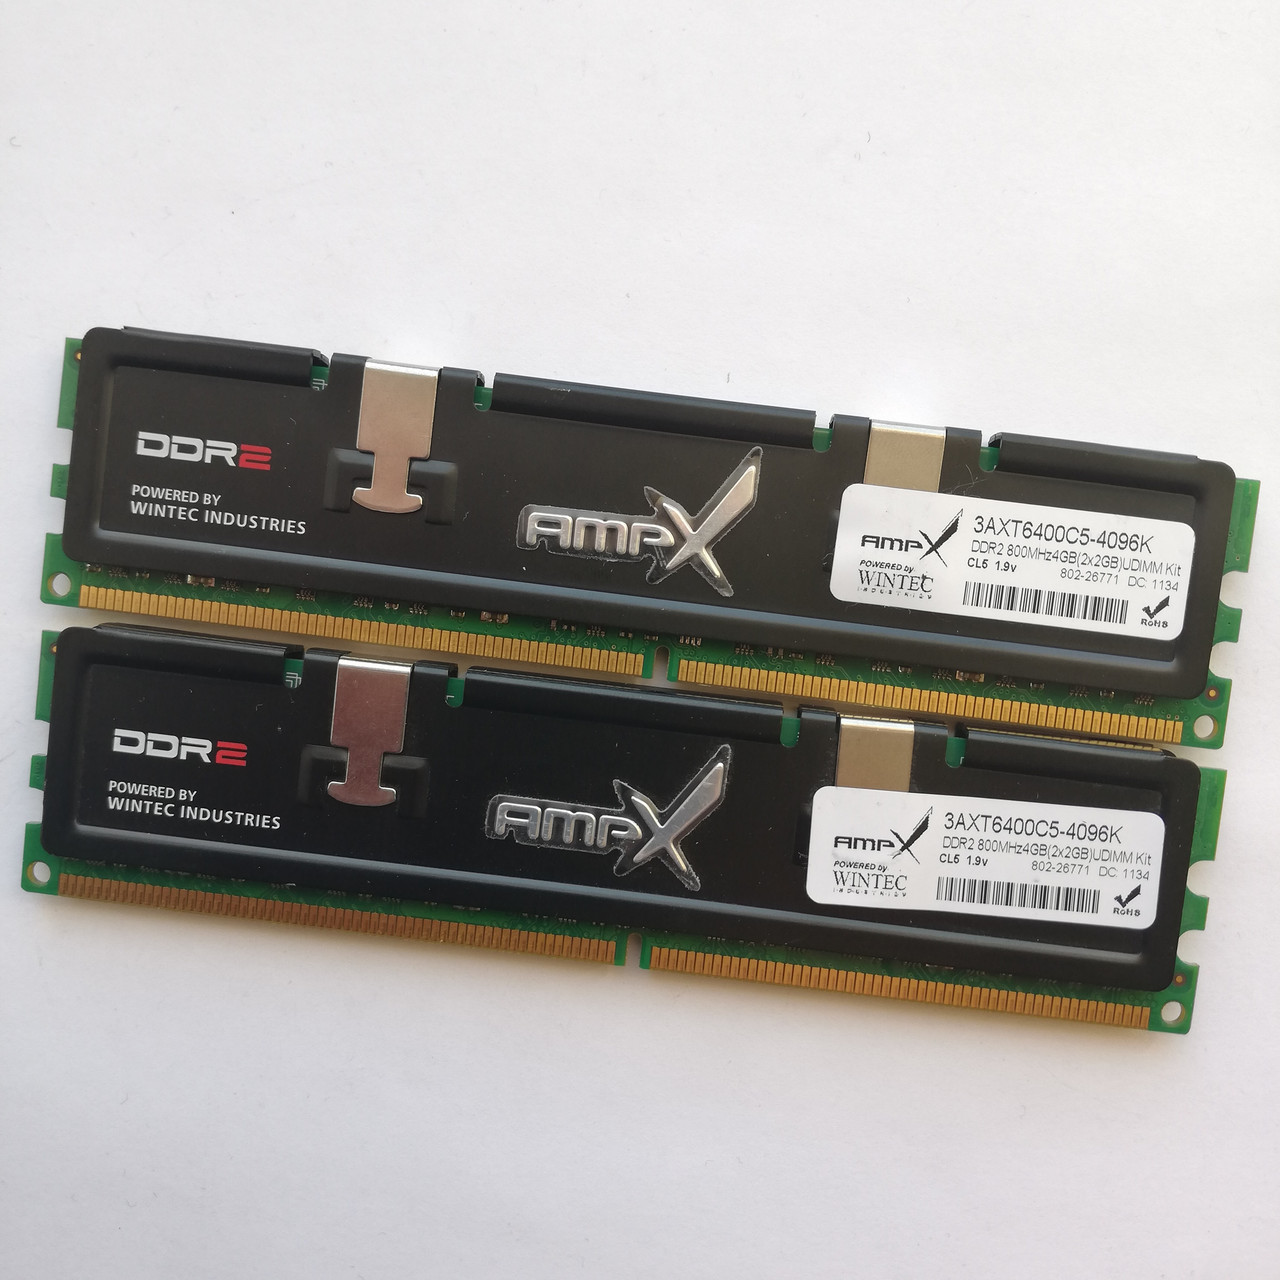 Пара оперативної пам'яті Wintec DDR2 4Gb (2Gb+2Gb) 800MHz PC2 6400U CL5 (3AXT6400C5-4096K) Б/В